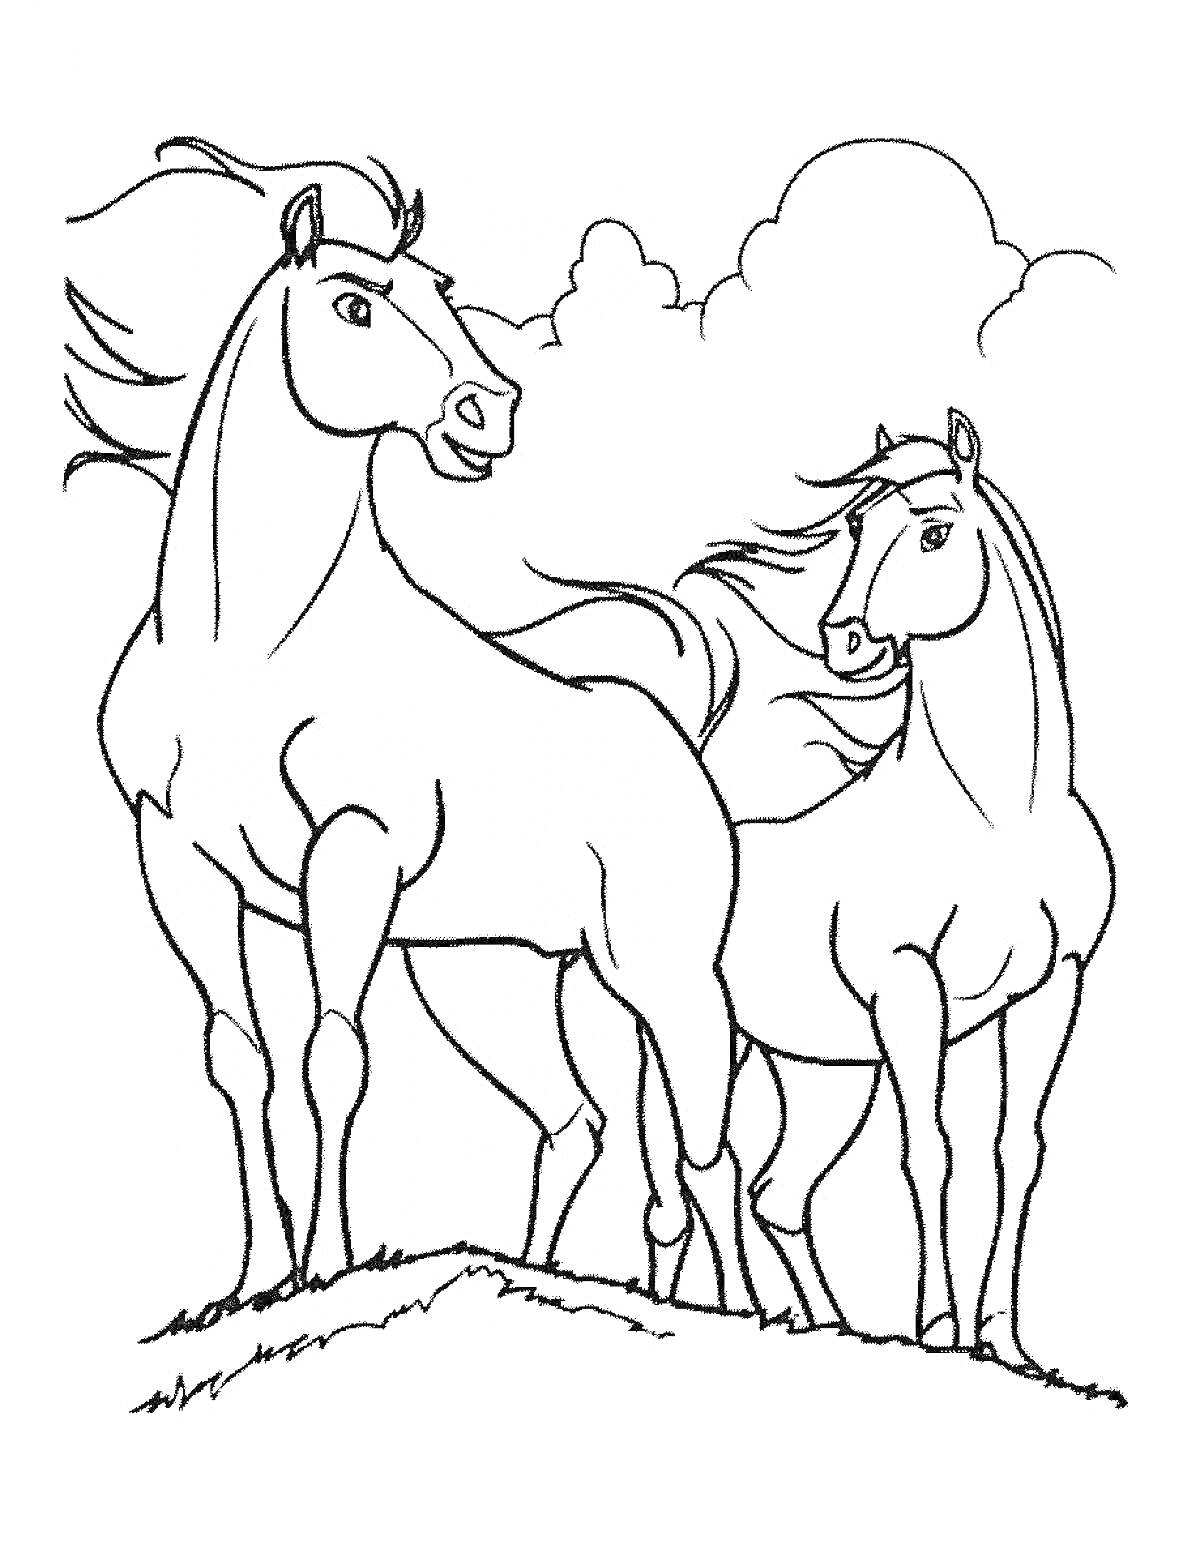 Две лошади на холме с облаками на заднем плане